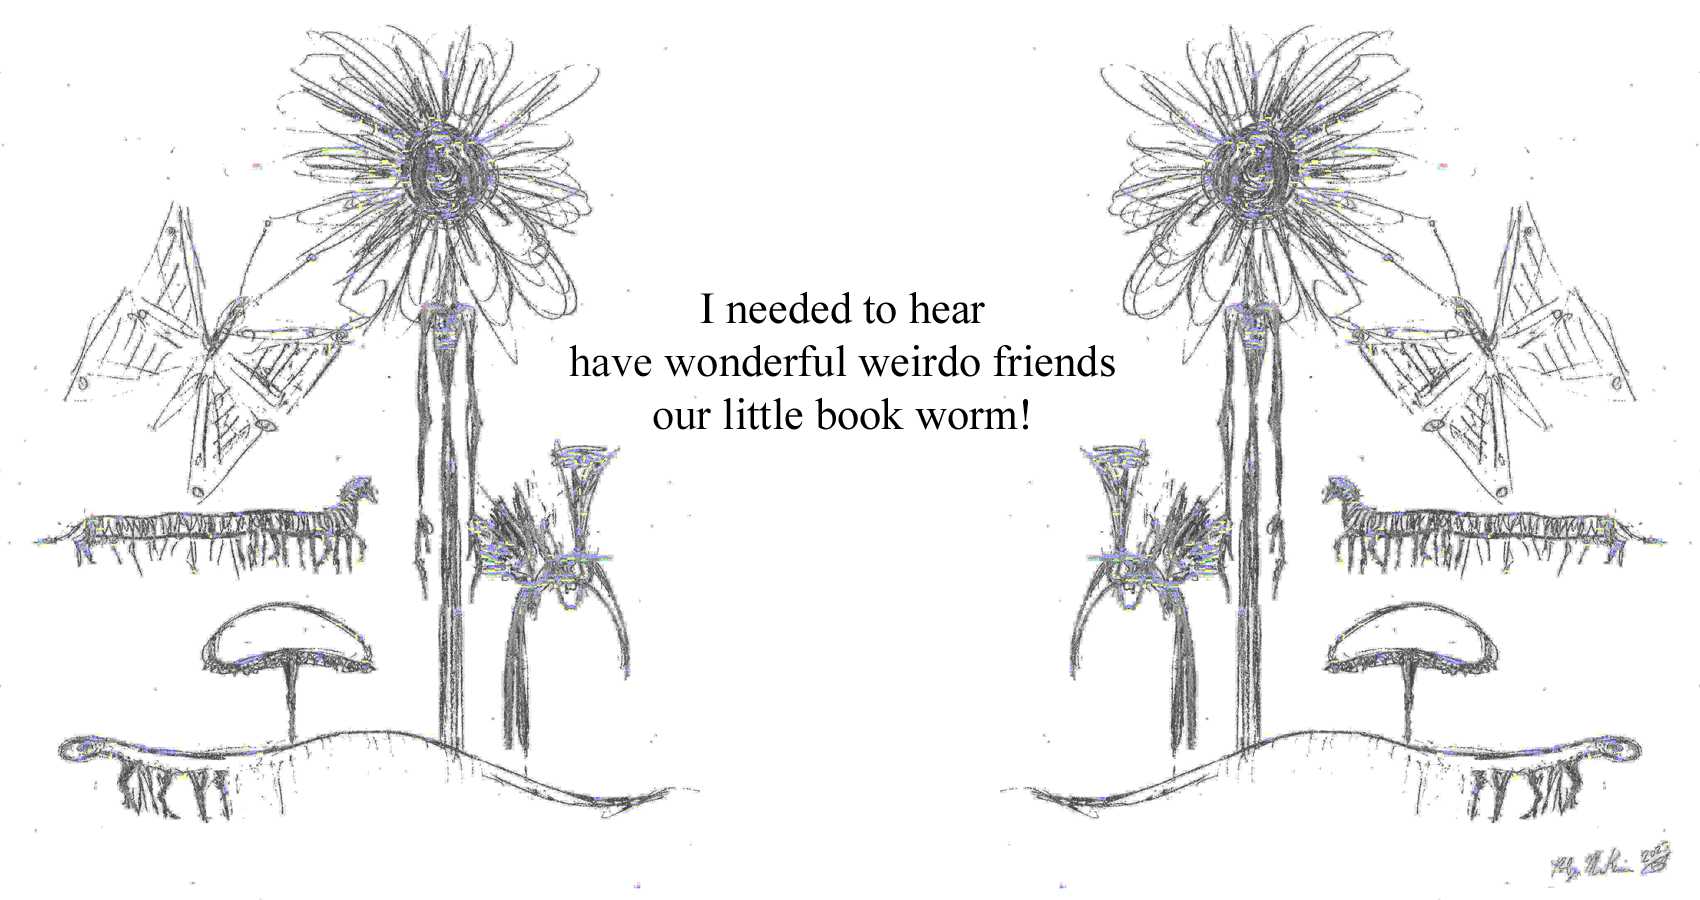 Wonderful Weirdo Friends, a haiku by Robyn MacKinnon at Spillwords.com